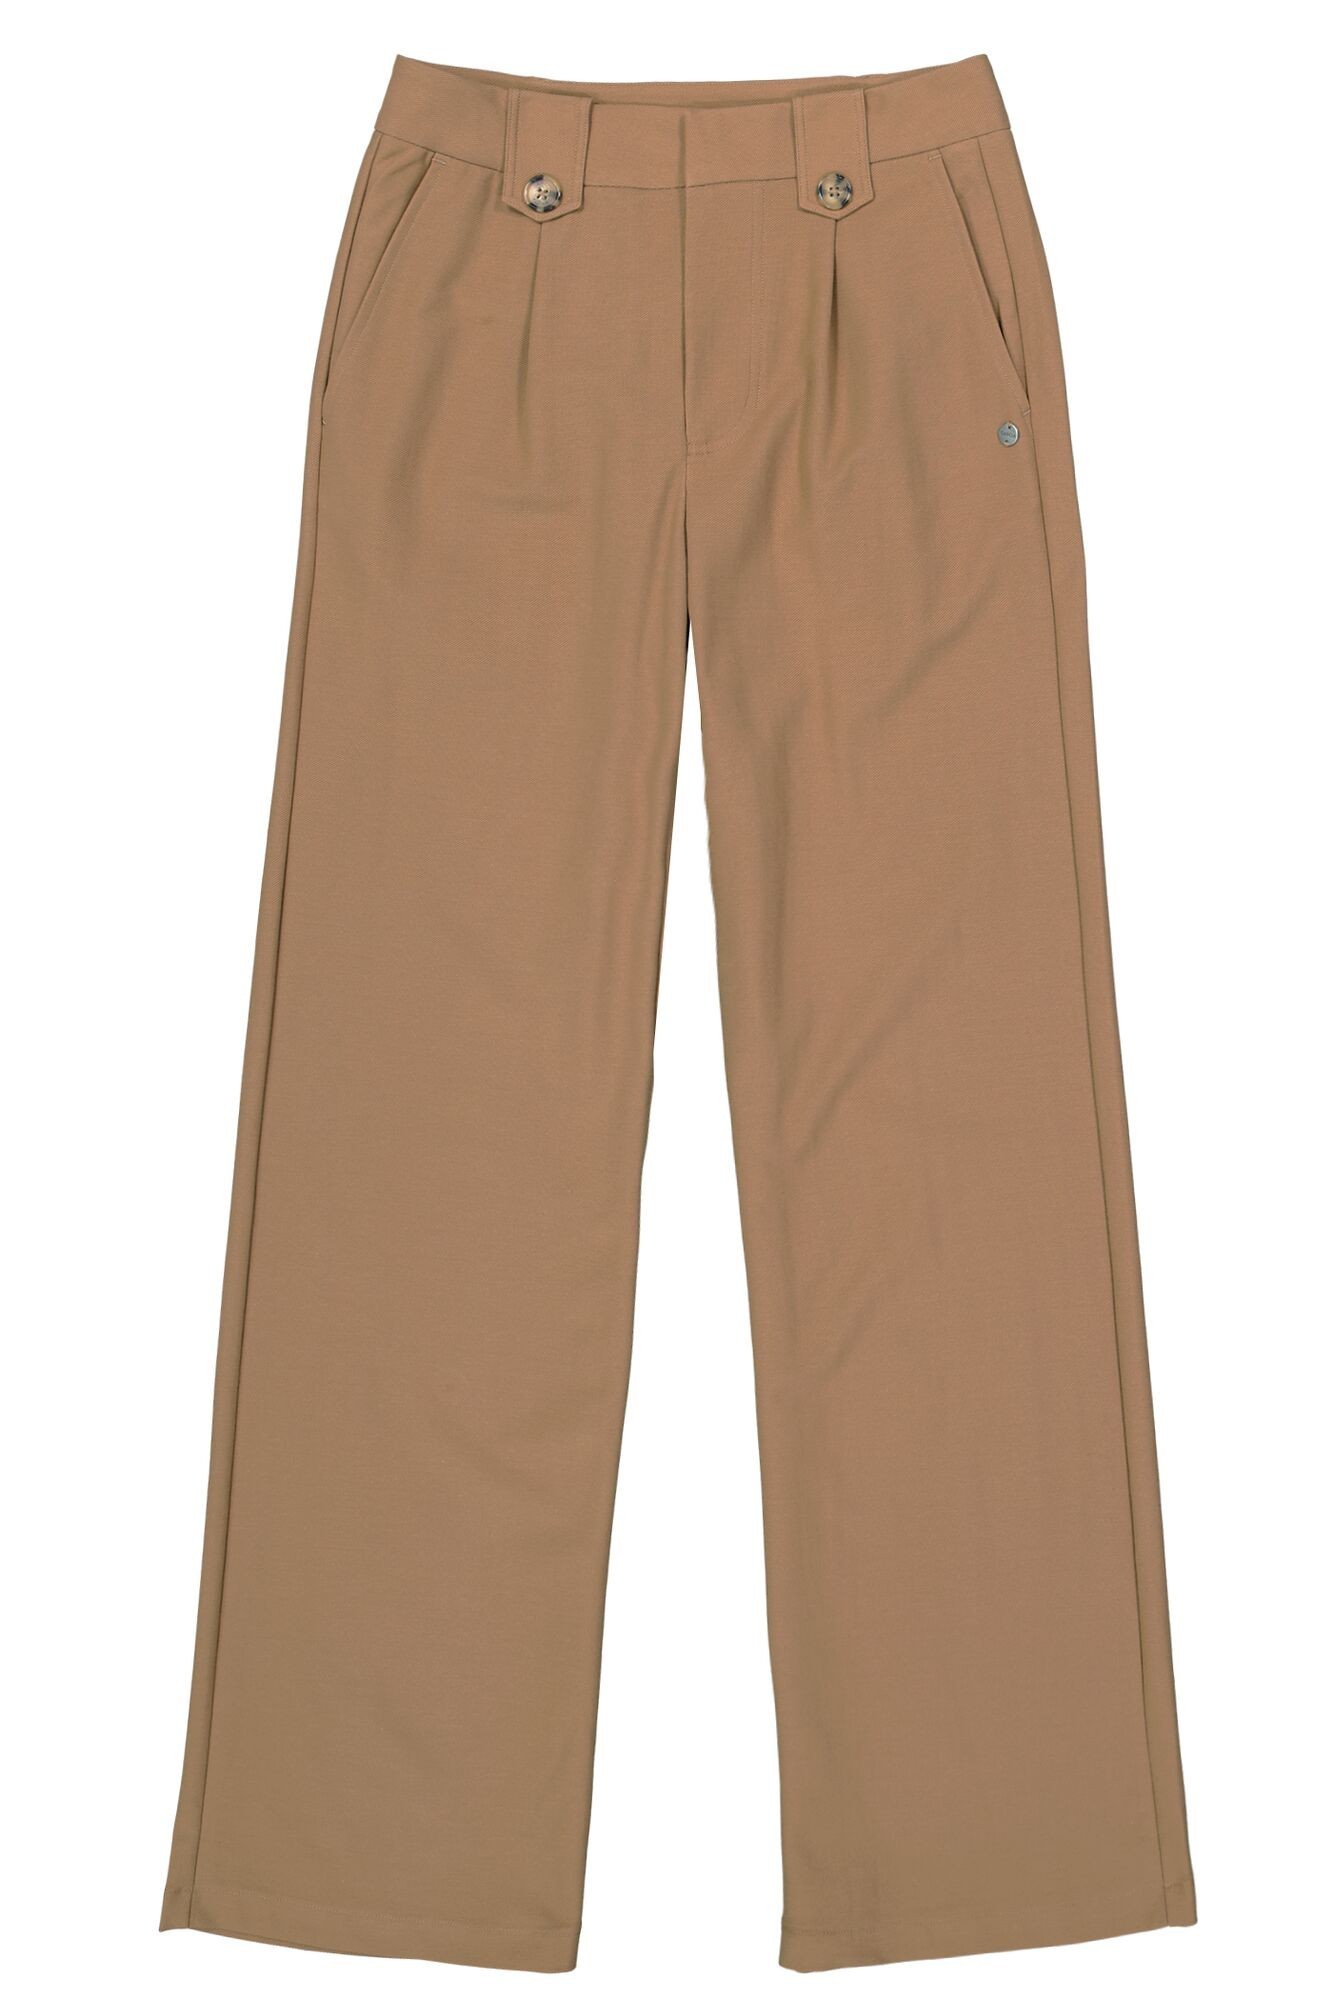 Pantalon golden brown garcia Jeans